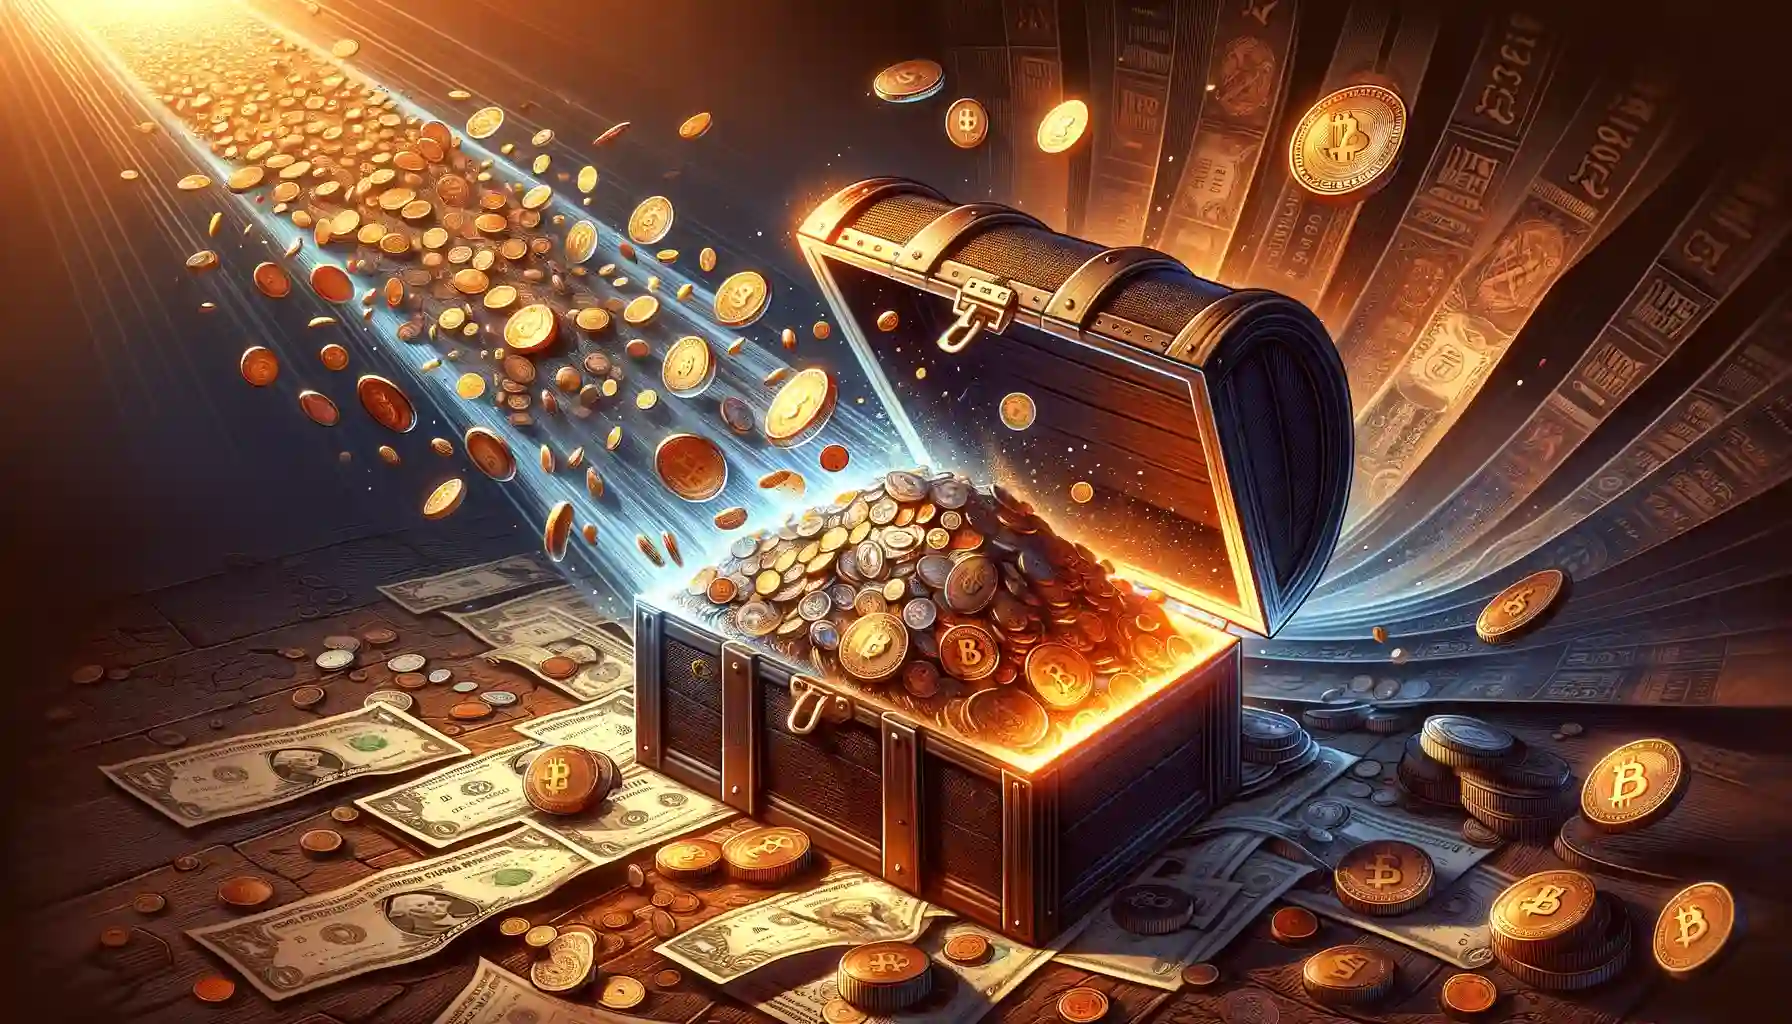 Arbitrum to unlock 93M tokens: Will it disrupt ARB prices?